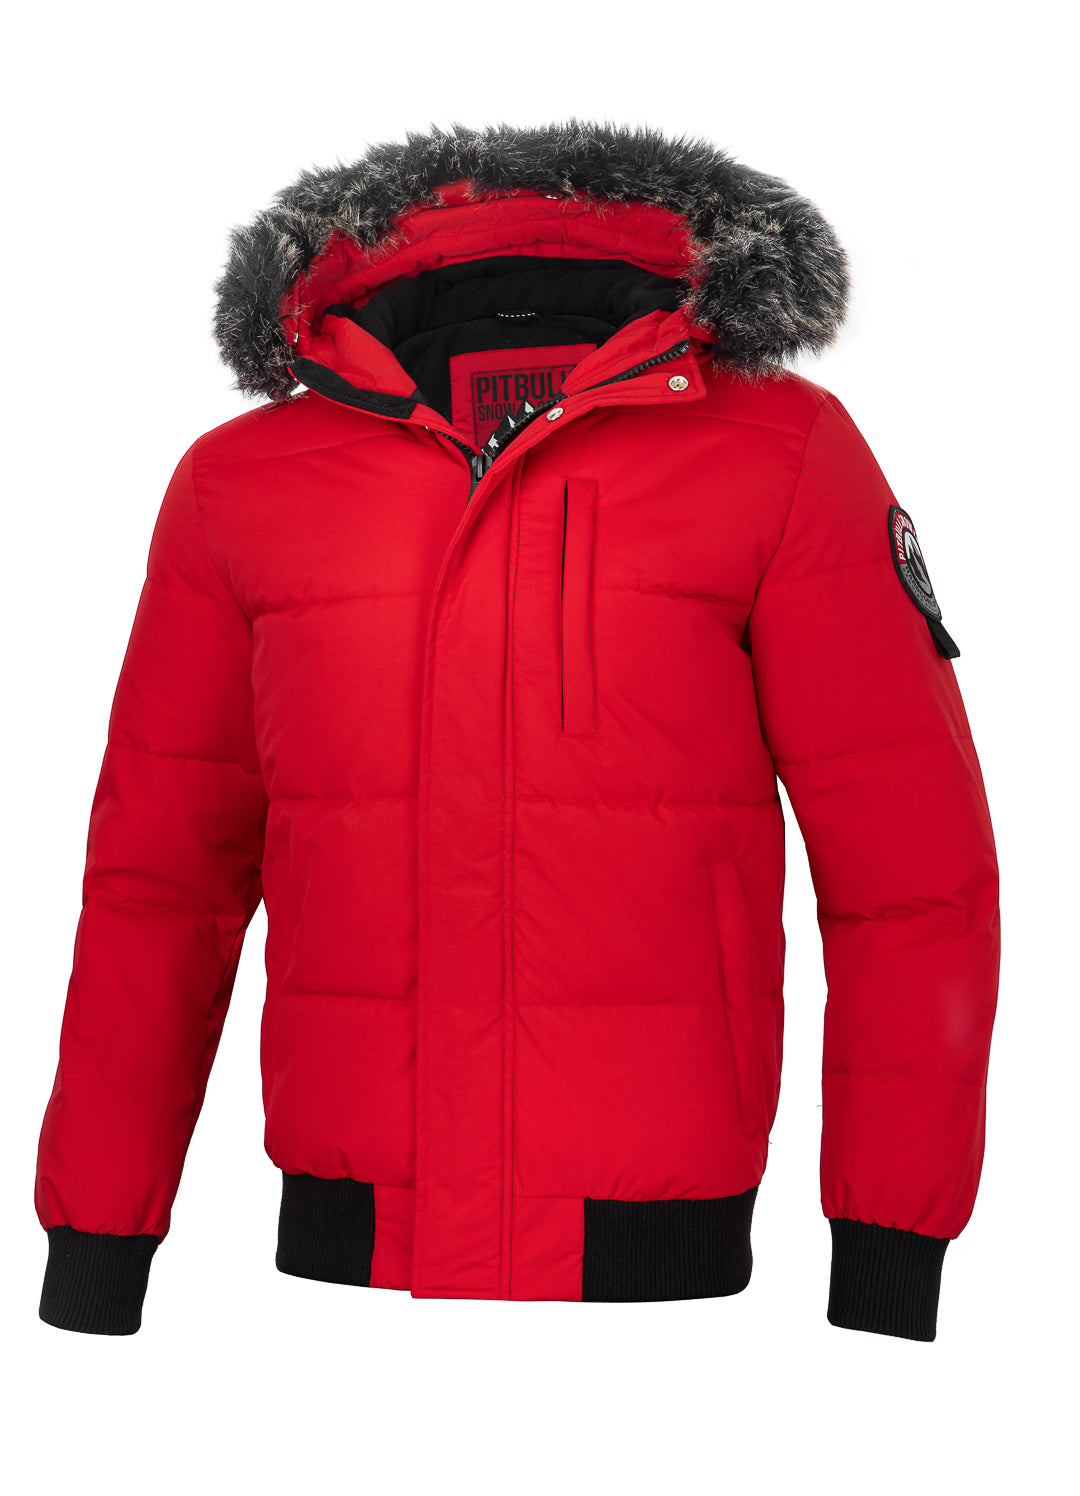 Buy NEWPORT Red Winter Jacket | Store